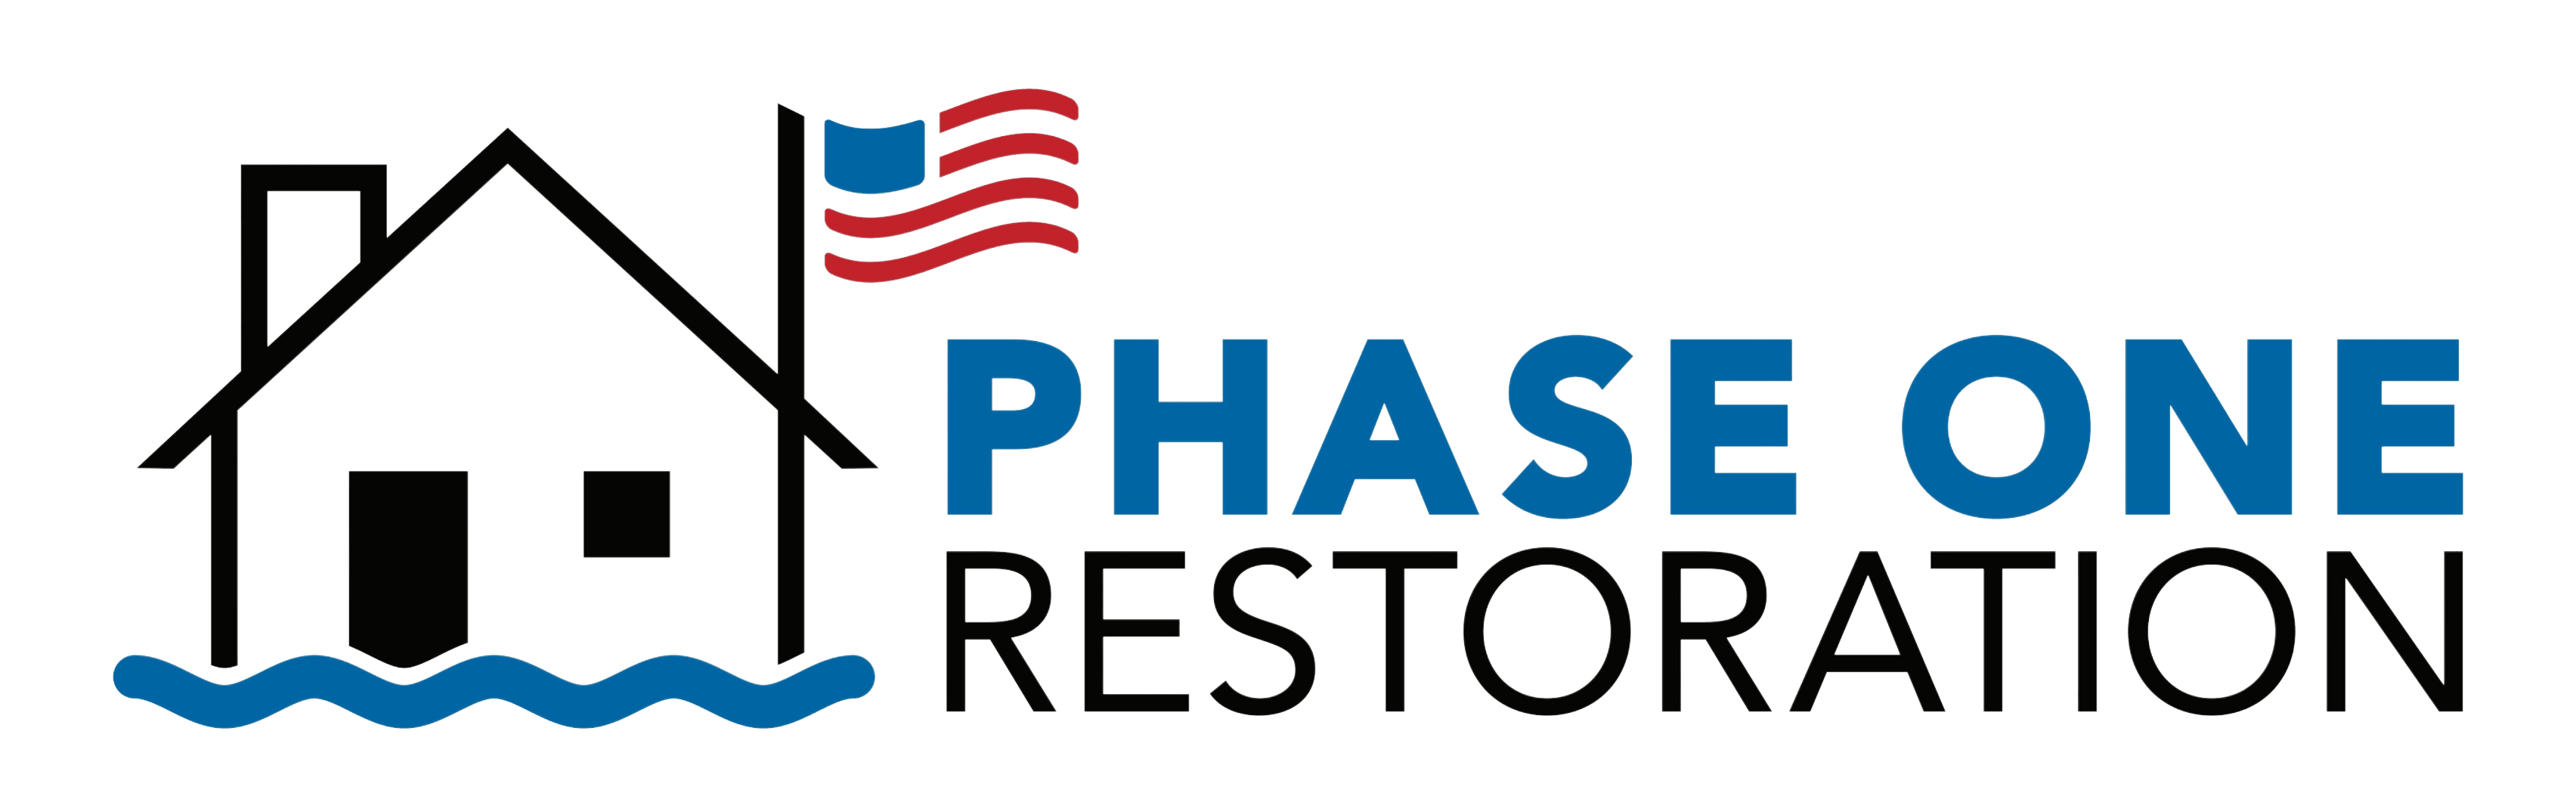 Phase 1 Restoration Logo